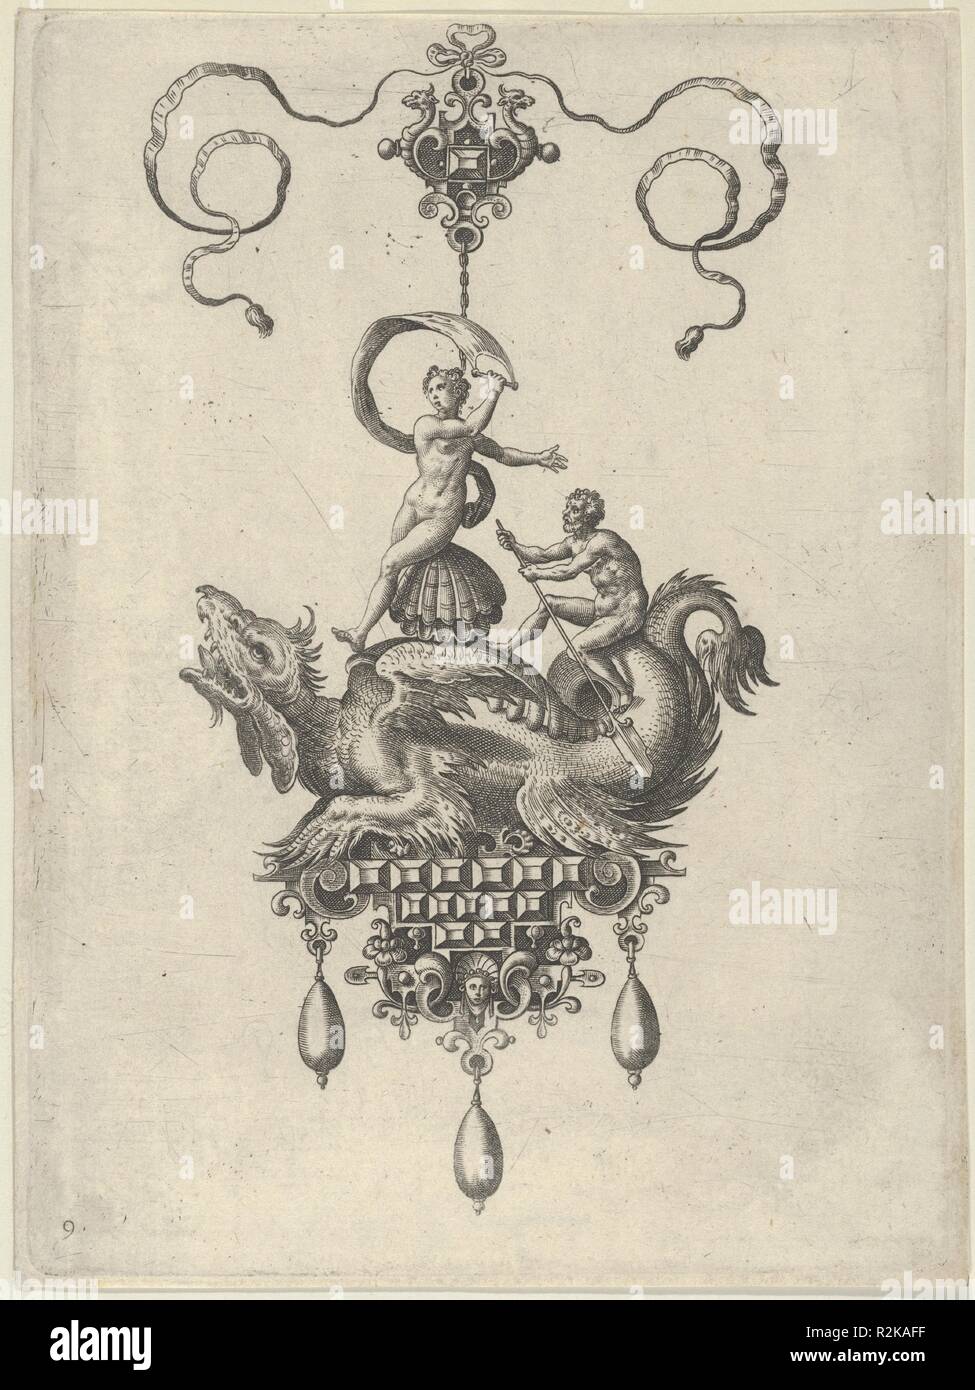 Il design del telecomando con un alato mostro del mare che porta Venere Anadyomene su uno scafo e un uomo con un remo. Artista: Adriaen Collaert (Netherlandish, Antwerp ca. 1560-1618 Anversa); dopo un design by Jan Collaert I (Netherlandish, Antwerp ca. 1530-1581 Anversa). Dimensioni: foglio: 6 15/16 × 5 3/16 in. (17,7 × 13,2 cm). Editore: pubblicato da Philips Galle (Netherlandish, Haarlem 1537-1612 Anversa) , ad Anversa. Serie/Portfolio: Progetta per ciondoli II. Data: 1582. Pannello verticale con un pendente a forma di mostro marino che trasportano Nettuno, chi è seduto su una shell e mantiene una vela nel suo diritto han Foto Stock